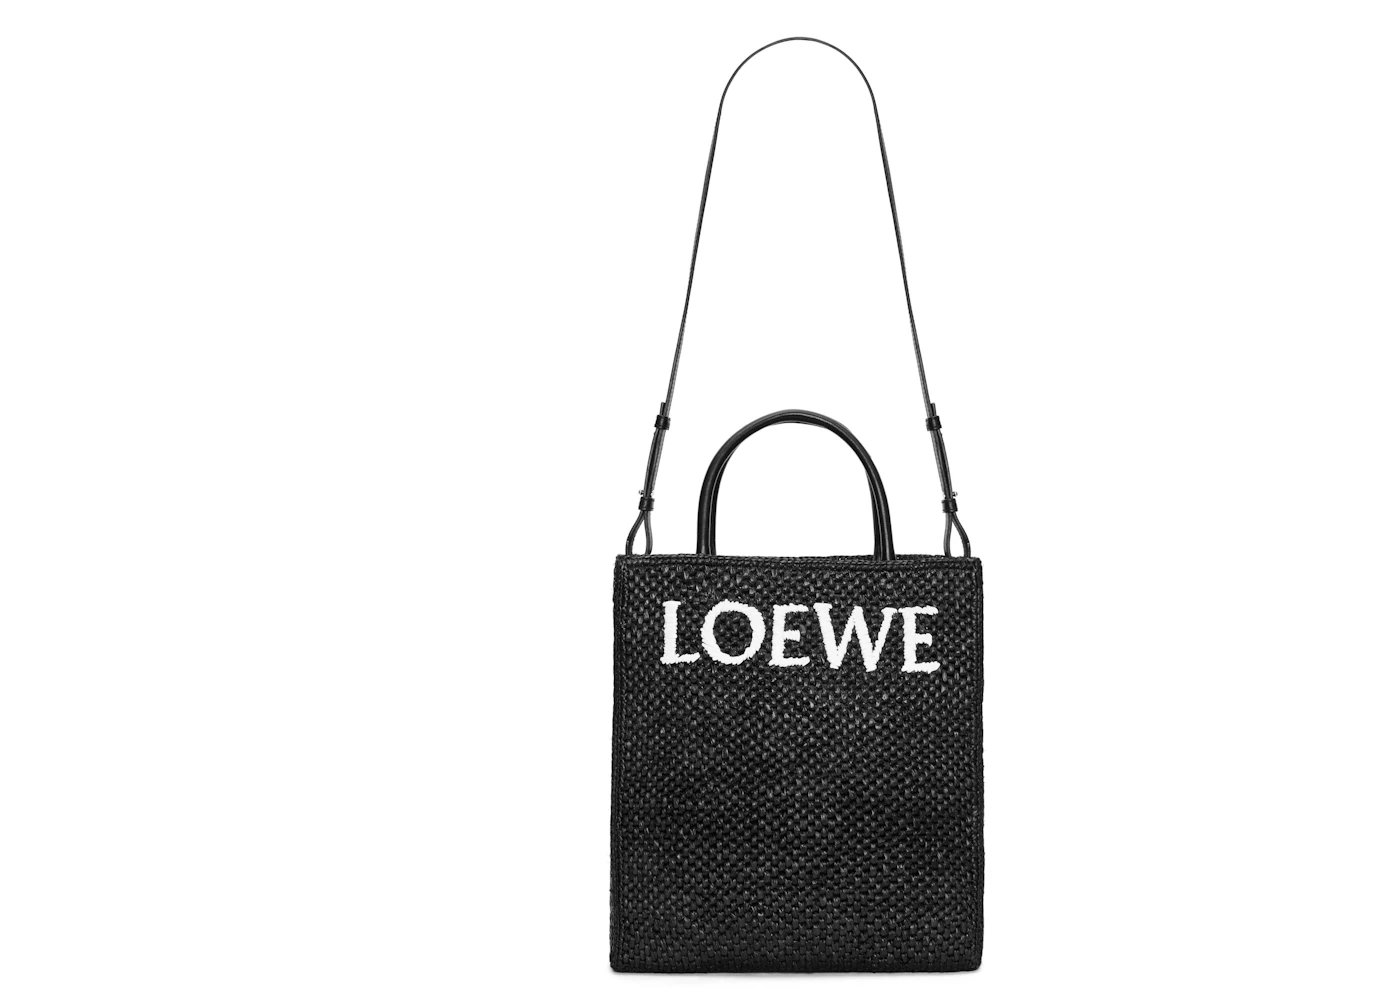 LOEWE Standard A4 Tote Bag In Raffia Black/White in Raffia with Gold ...